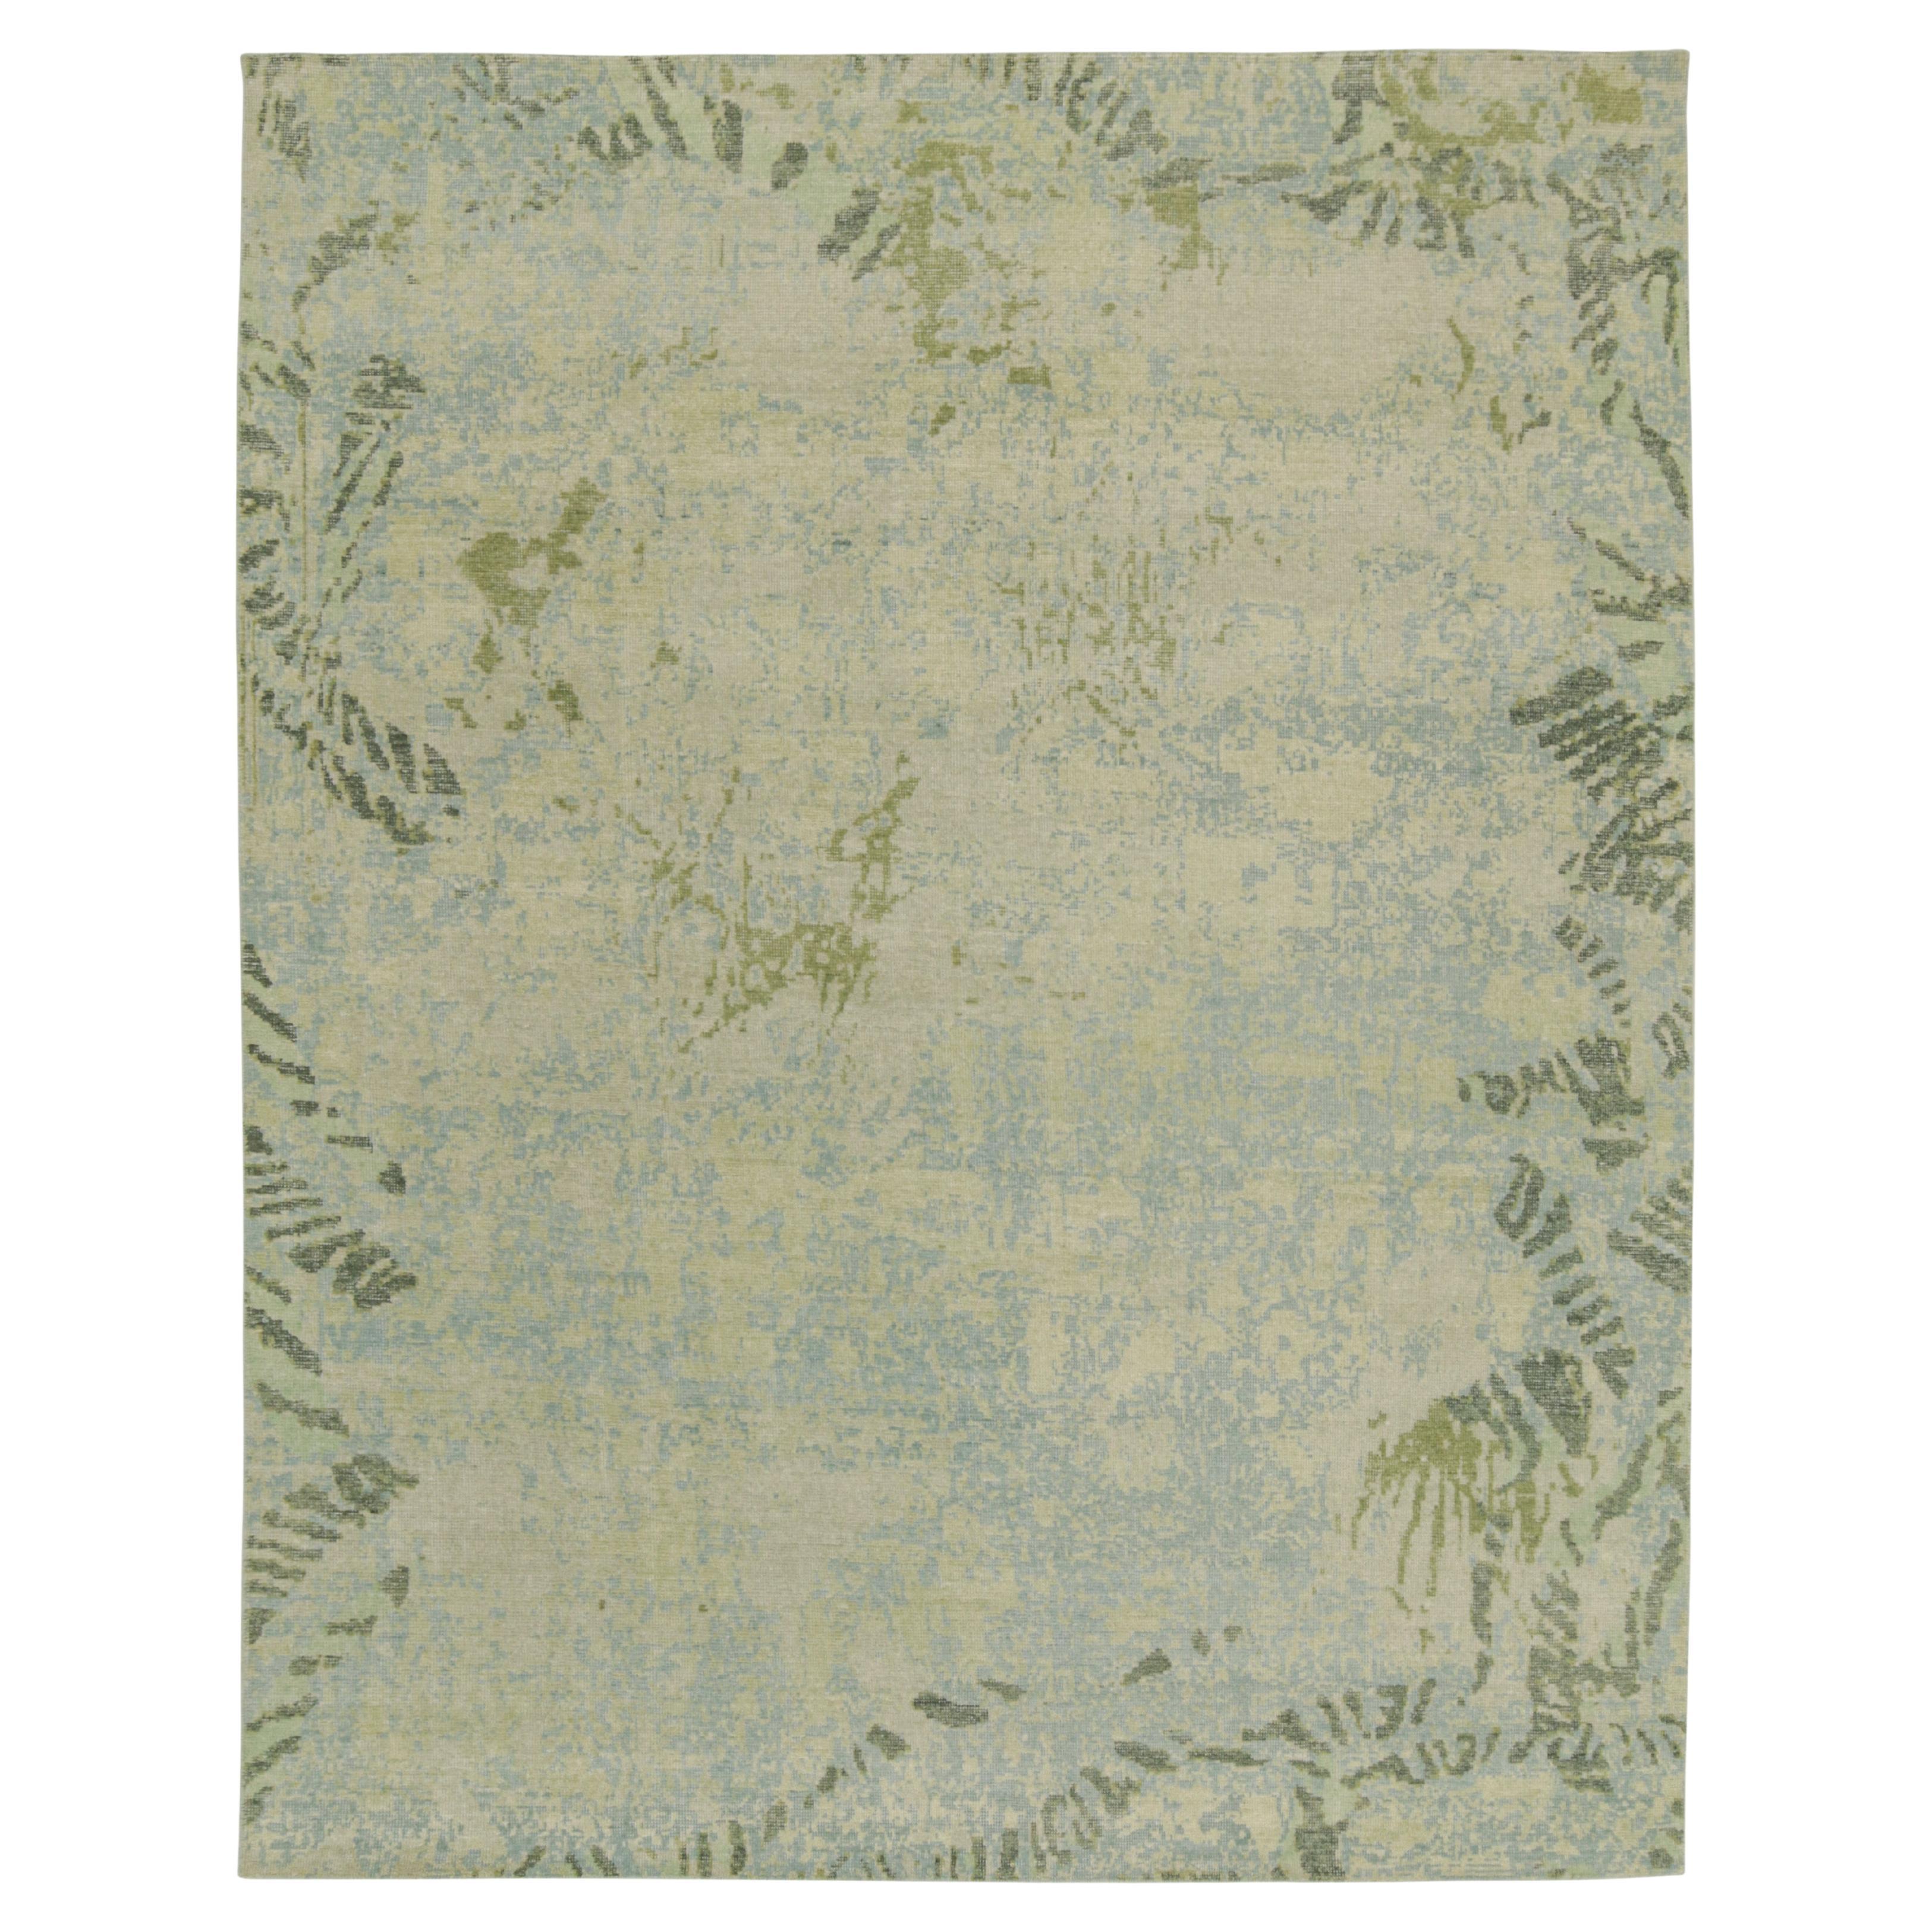 Abstrakter Teppich im Distressed-Stil von Rug & Kilim mit blauem, grauem und grünem Muster